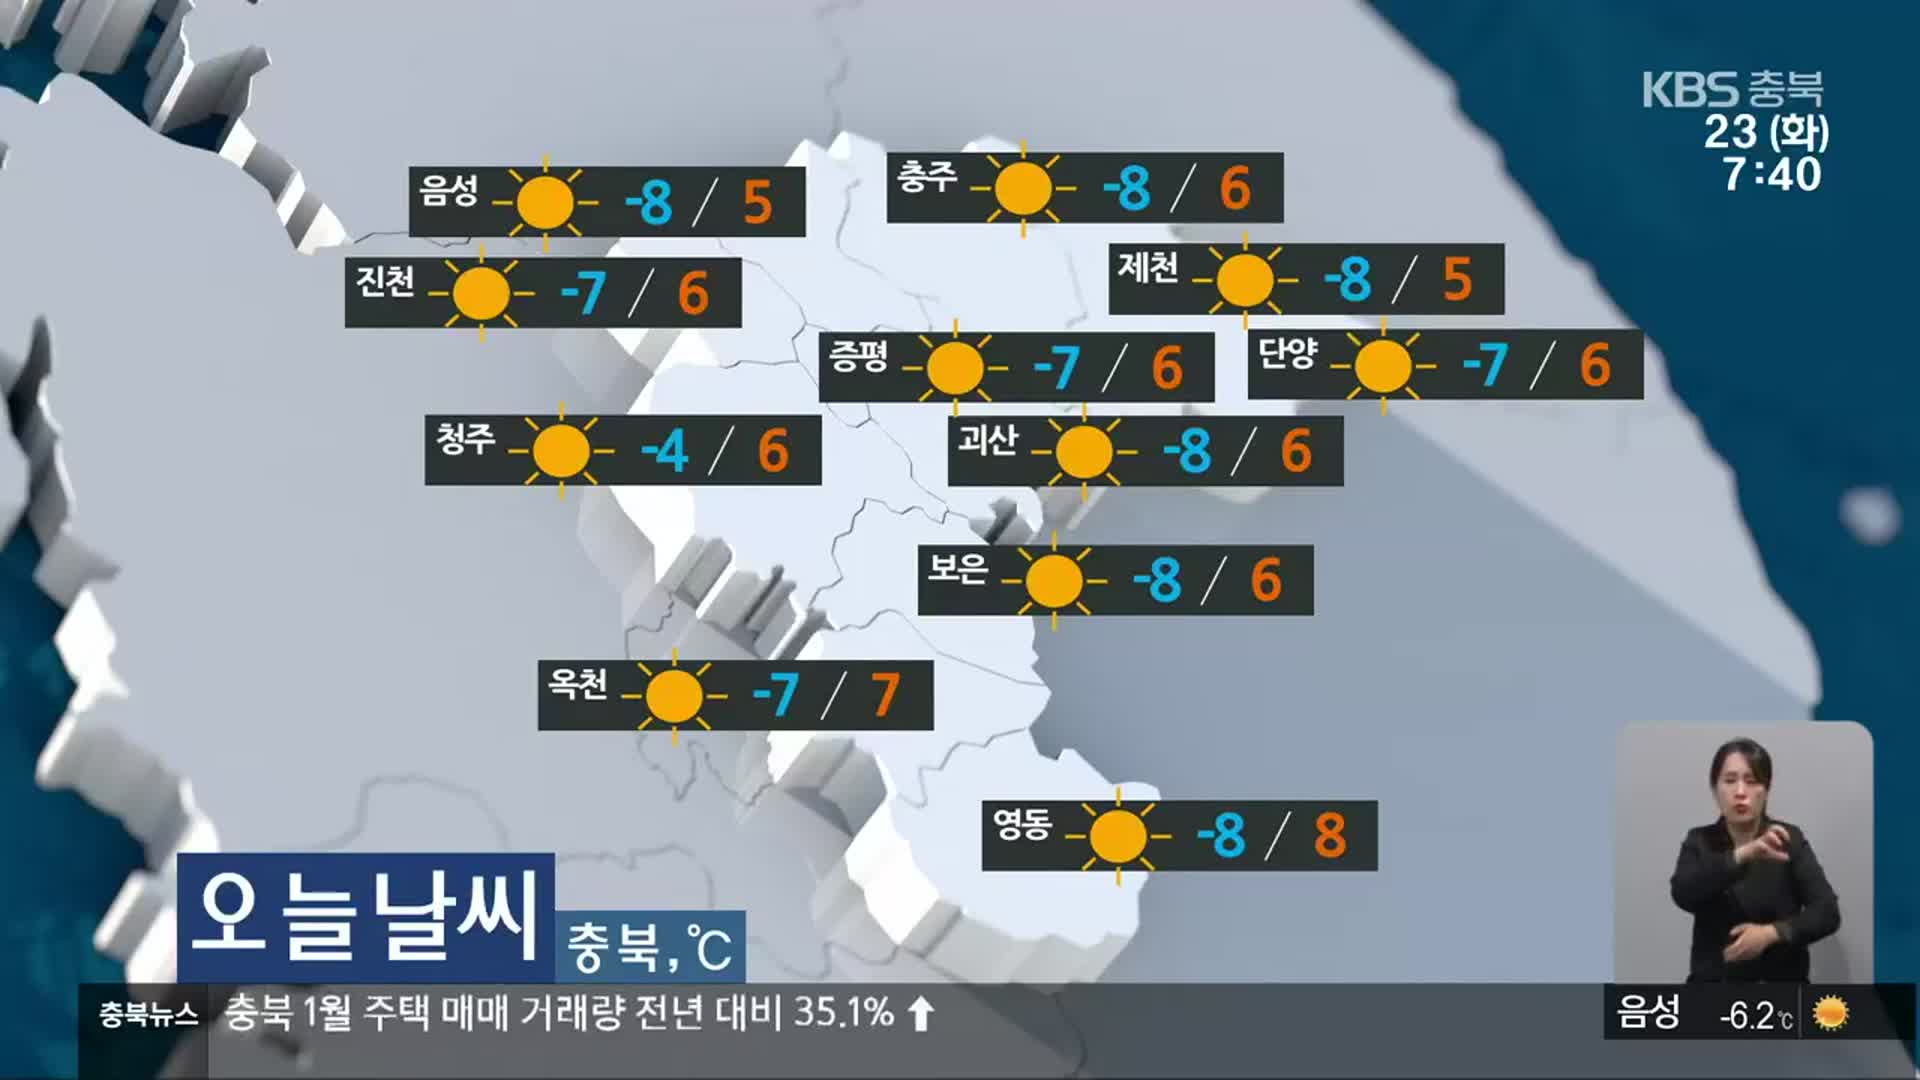 [날씨] 충북 전역 한파주의보…한낮 최고 기온 8도